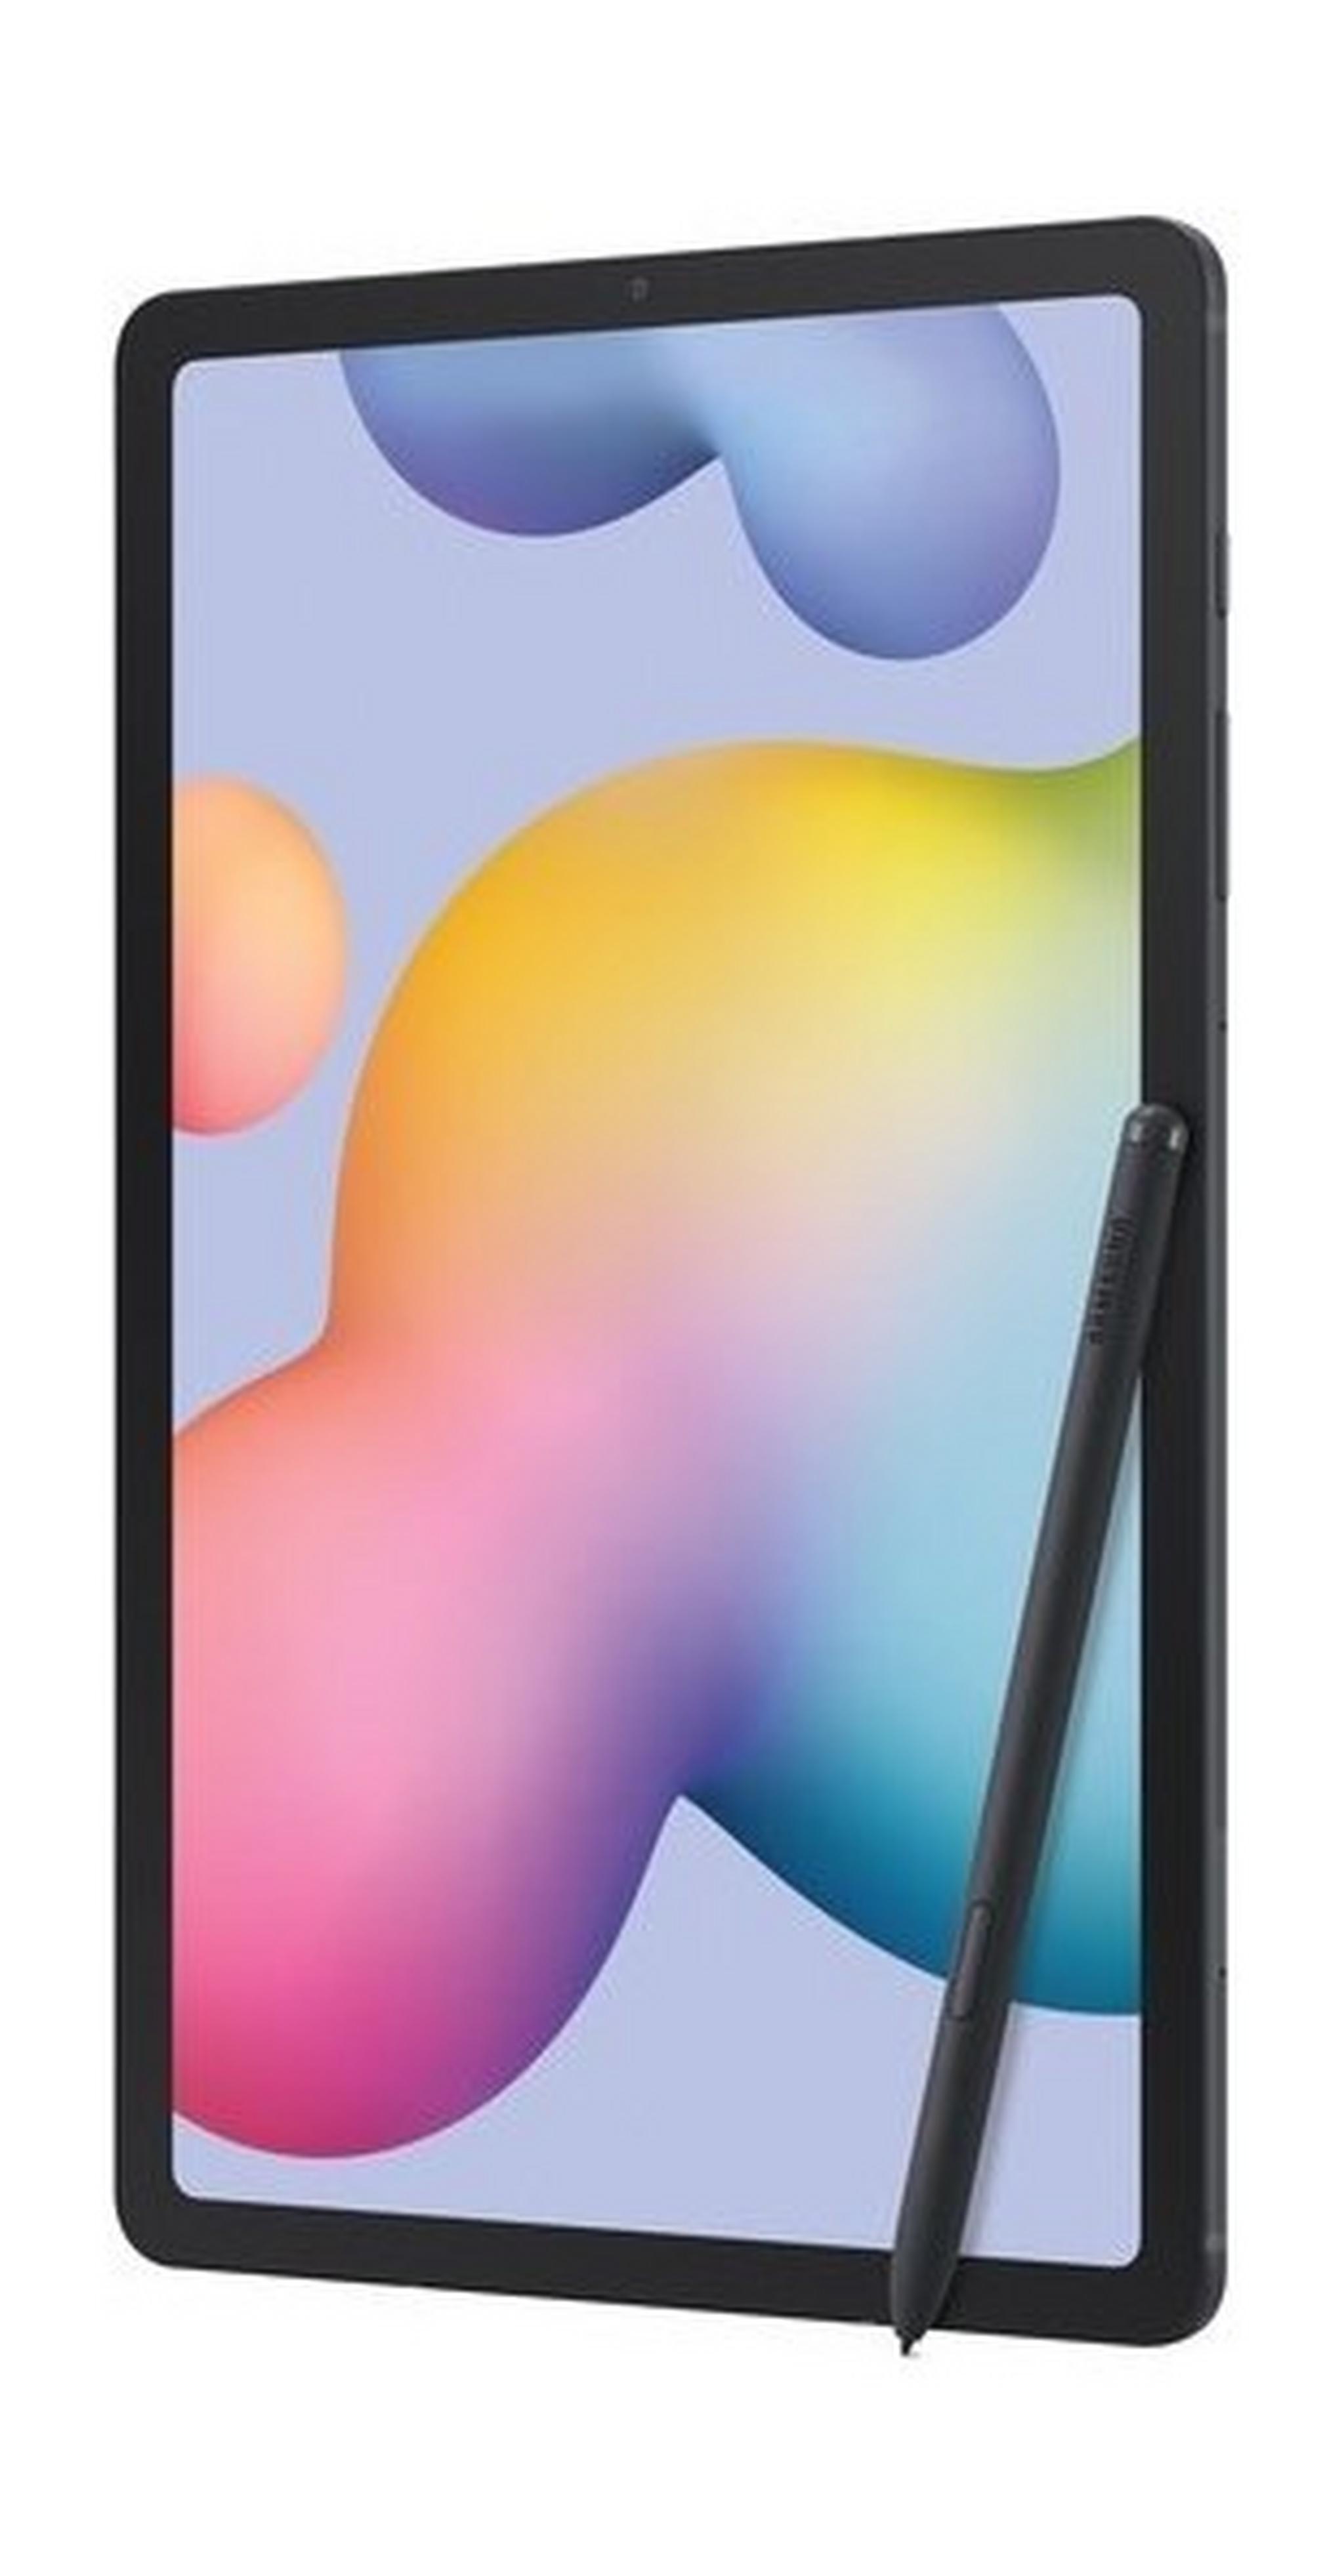 Samsung Galaxy TAB S6 Lite 10.4-inch 4G Tablet - Grey